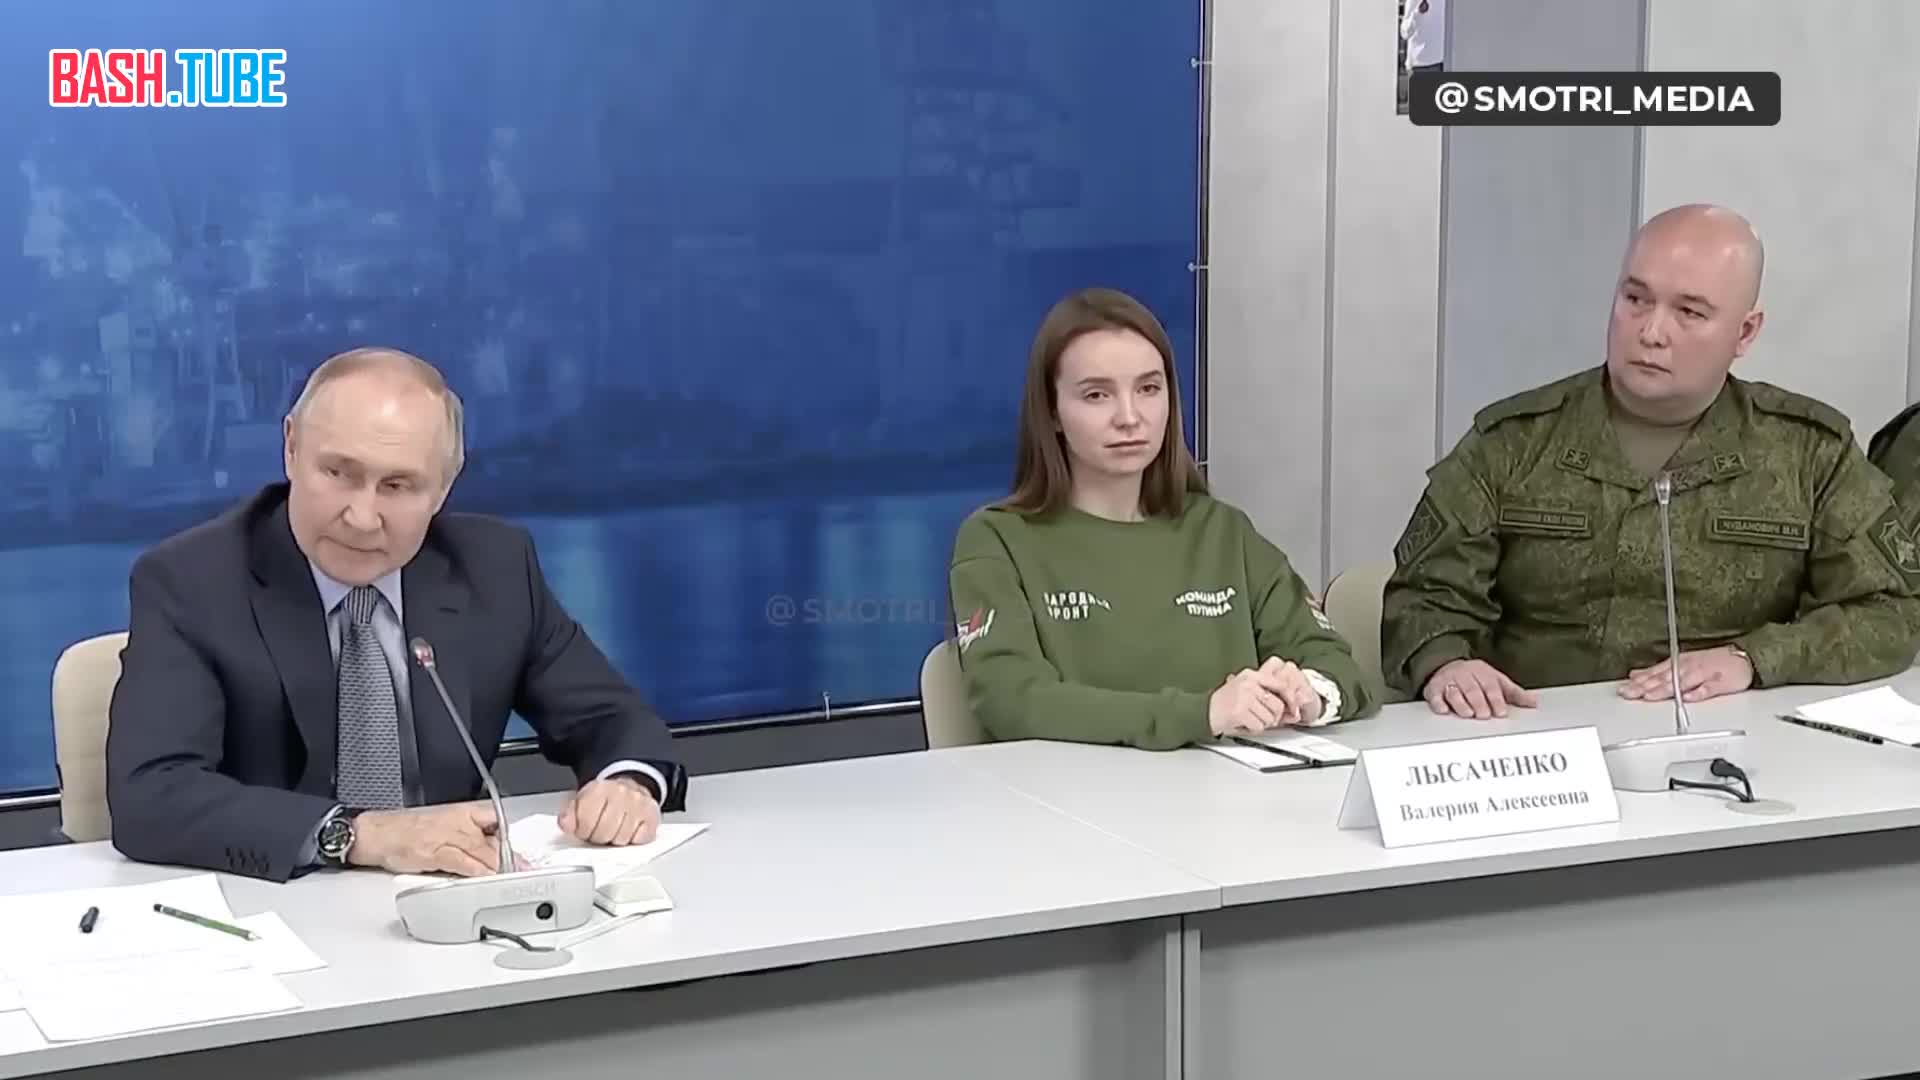  Путин говорит про спецоперацию на встрече со студентами-бойцами СВО